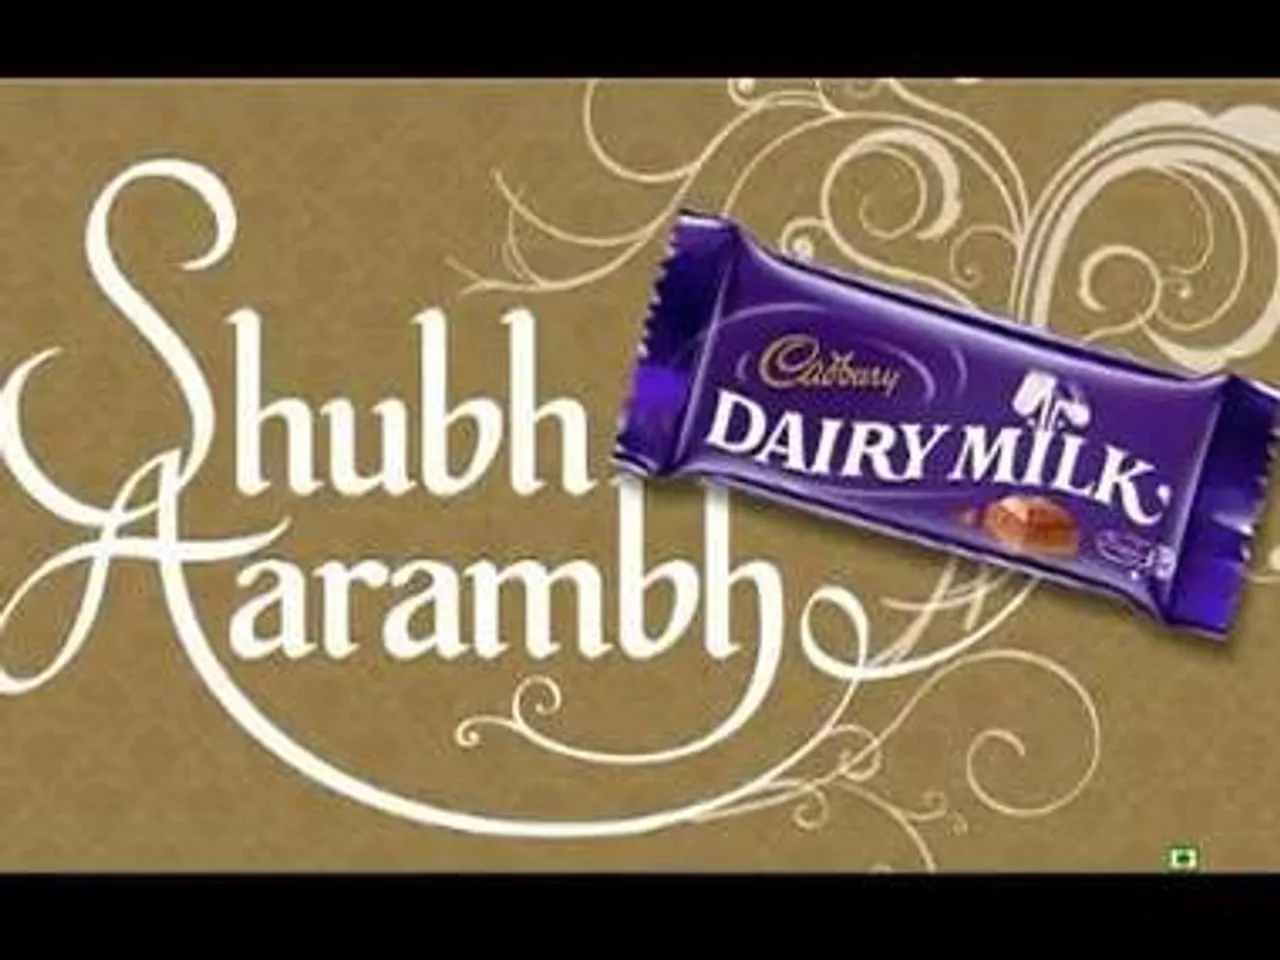 Social Media Campaign Review: Cadbury's Shubh Aarambh League